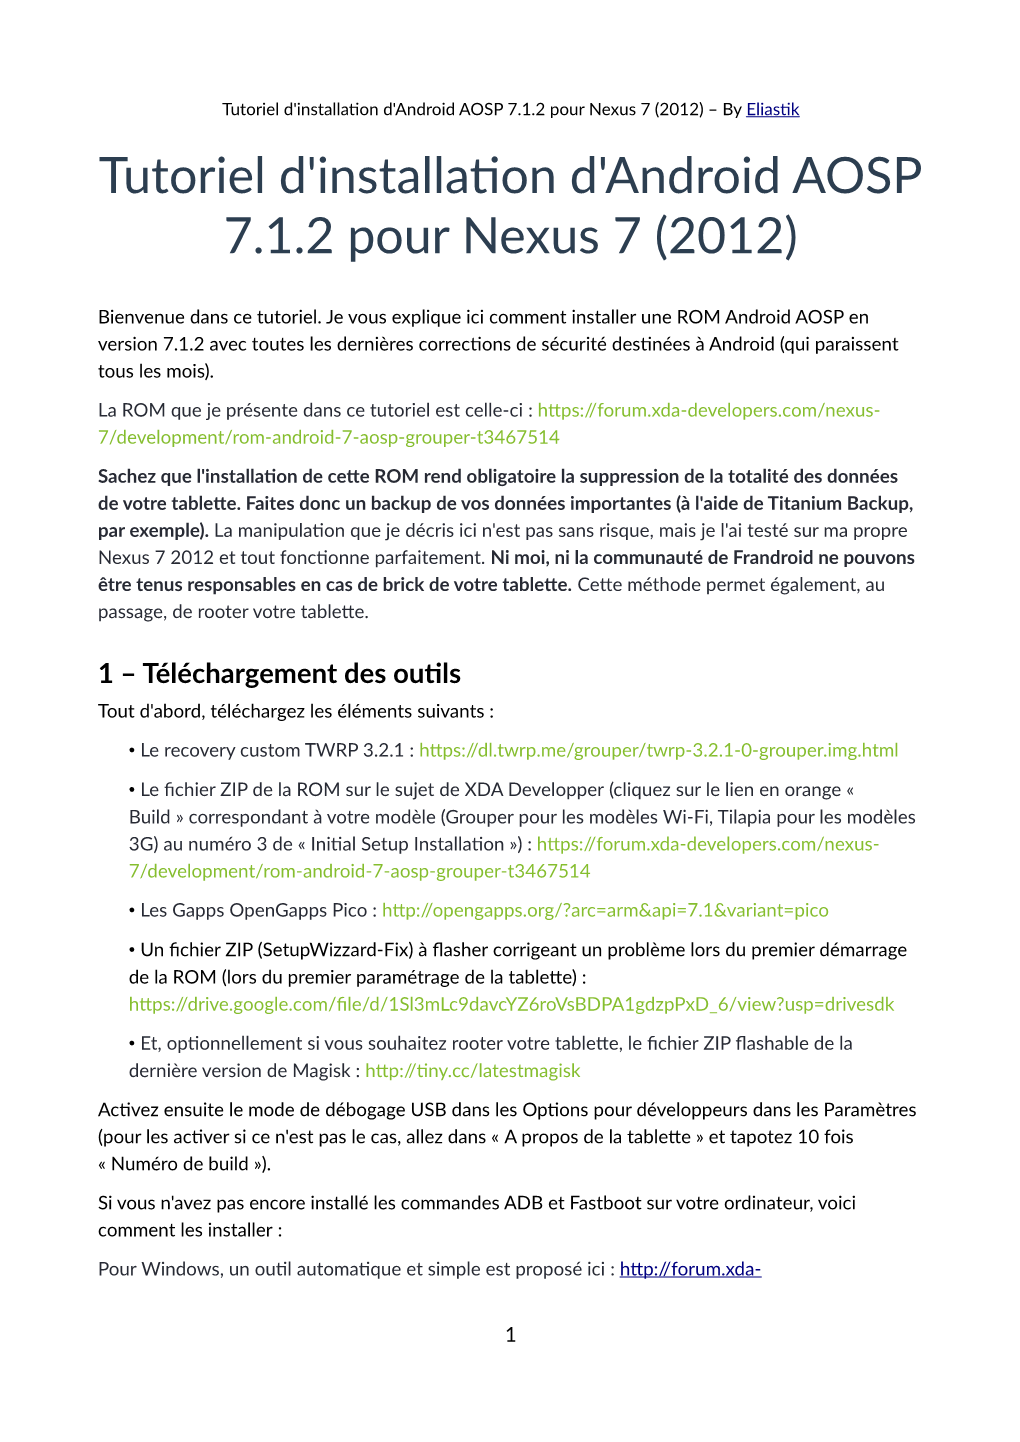 Tutoriel D'installaton D'android AOSP 7.1.2 Pour Nexus 7 (2012) – by Eliastik Tutoriel D'installaton D'android AOSP 7.1.2 Pour Nexus 7 (2012)